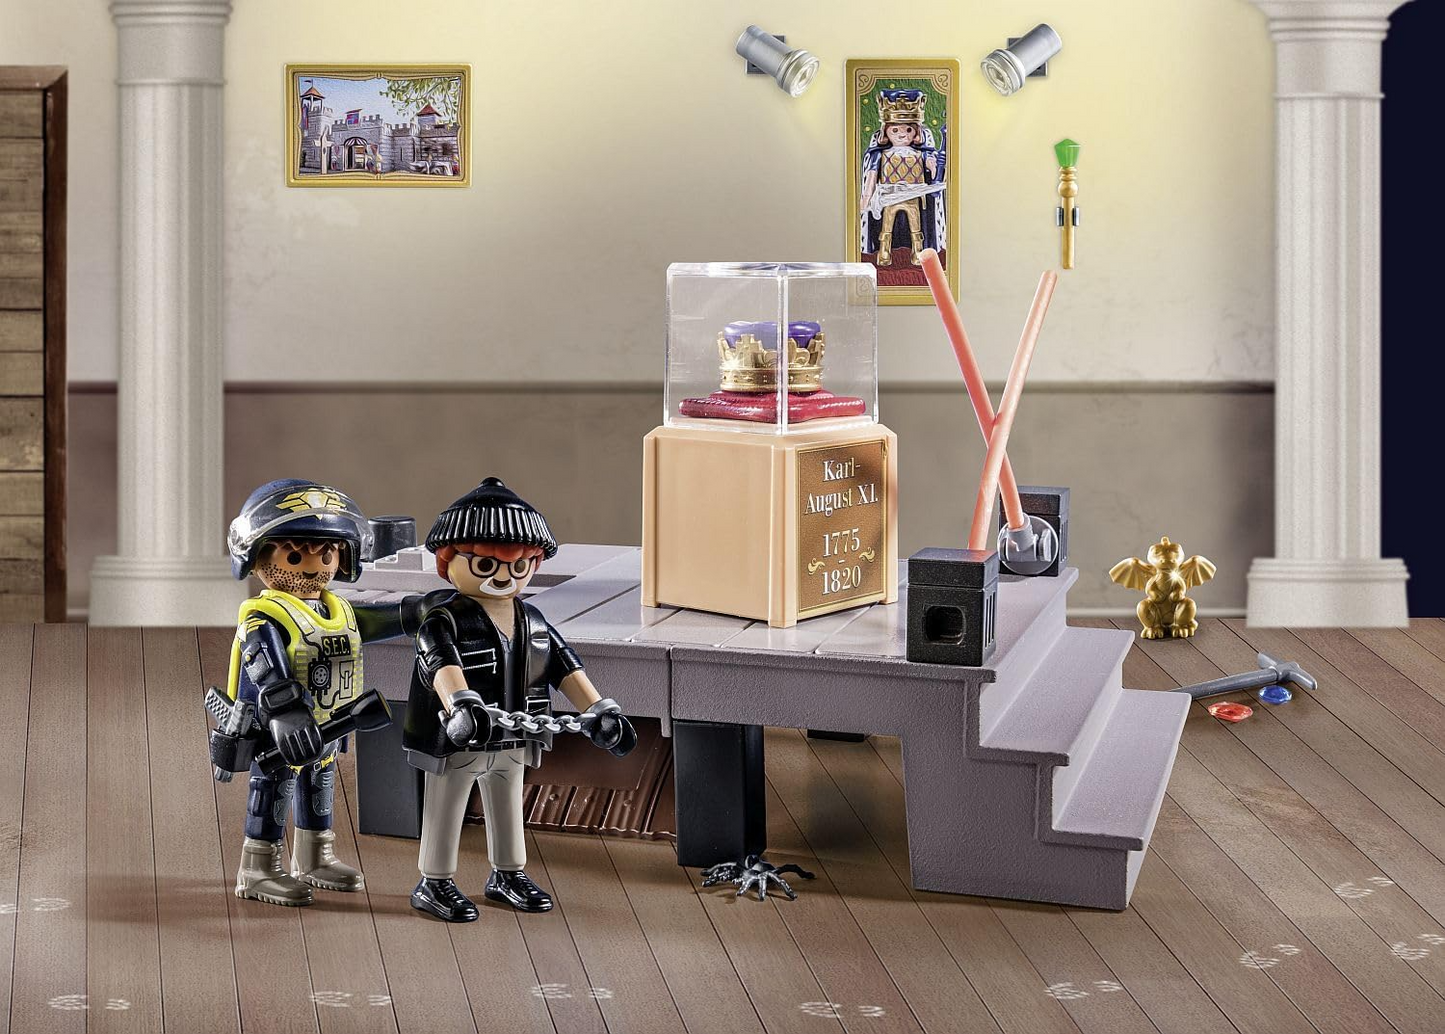 Playmobil 71347 Calendário do Advento - Roubo do Museu da Polícia, Contagem regressiva para o Natal, Inclui 24 portas para abrir todos os dias de dezembro, brinquedo de Natal para crianças a partir de 4 anos